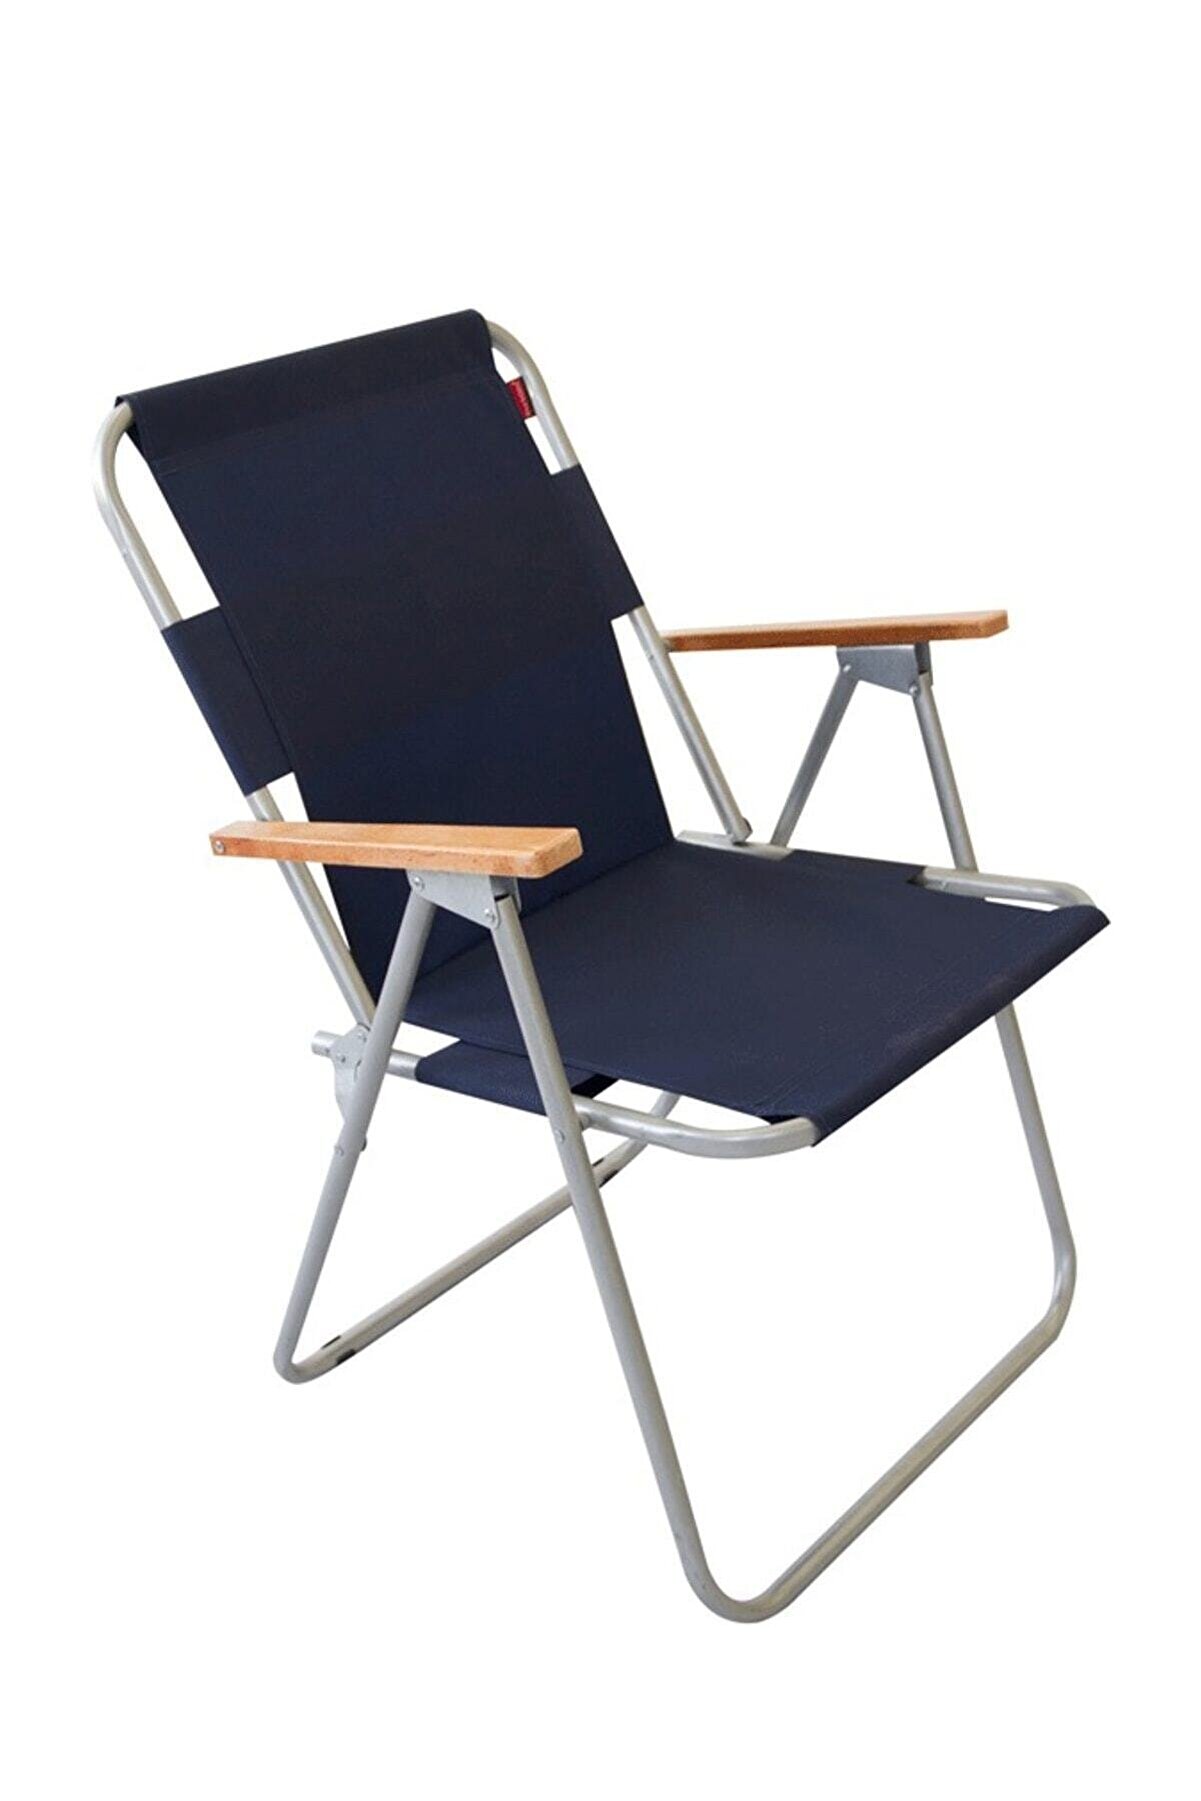 Bofigo Katlanır Sandalye Tekli Kamp Sandalyesi Balkon Sandalyesi Katlanabilir Piknik ve Bahçe Sandalyesi